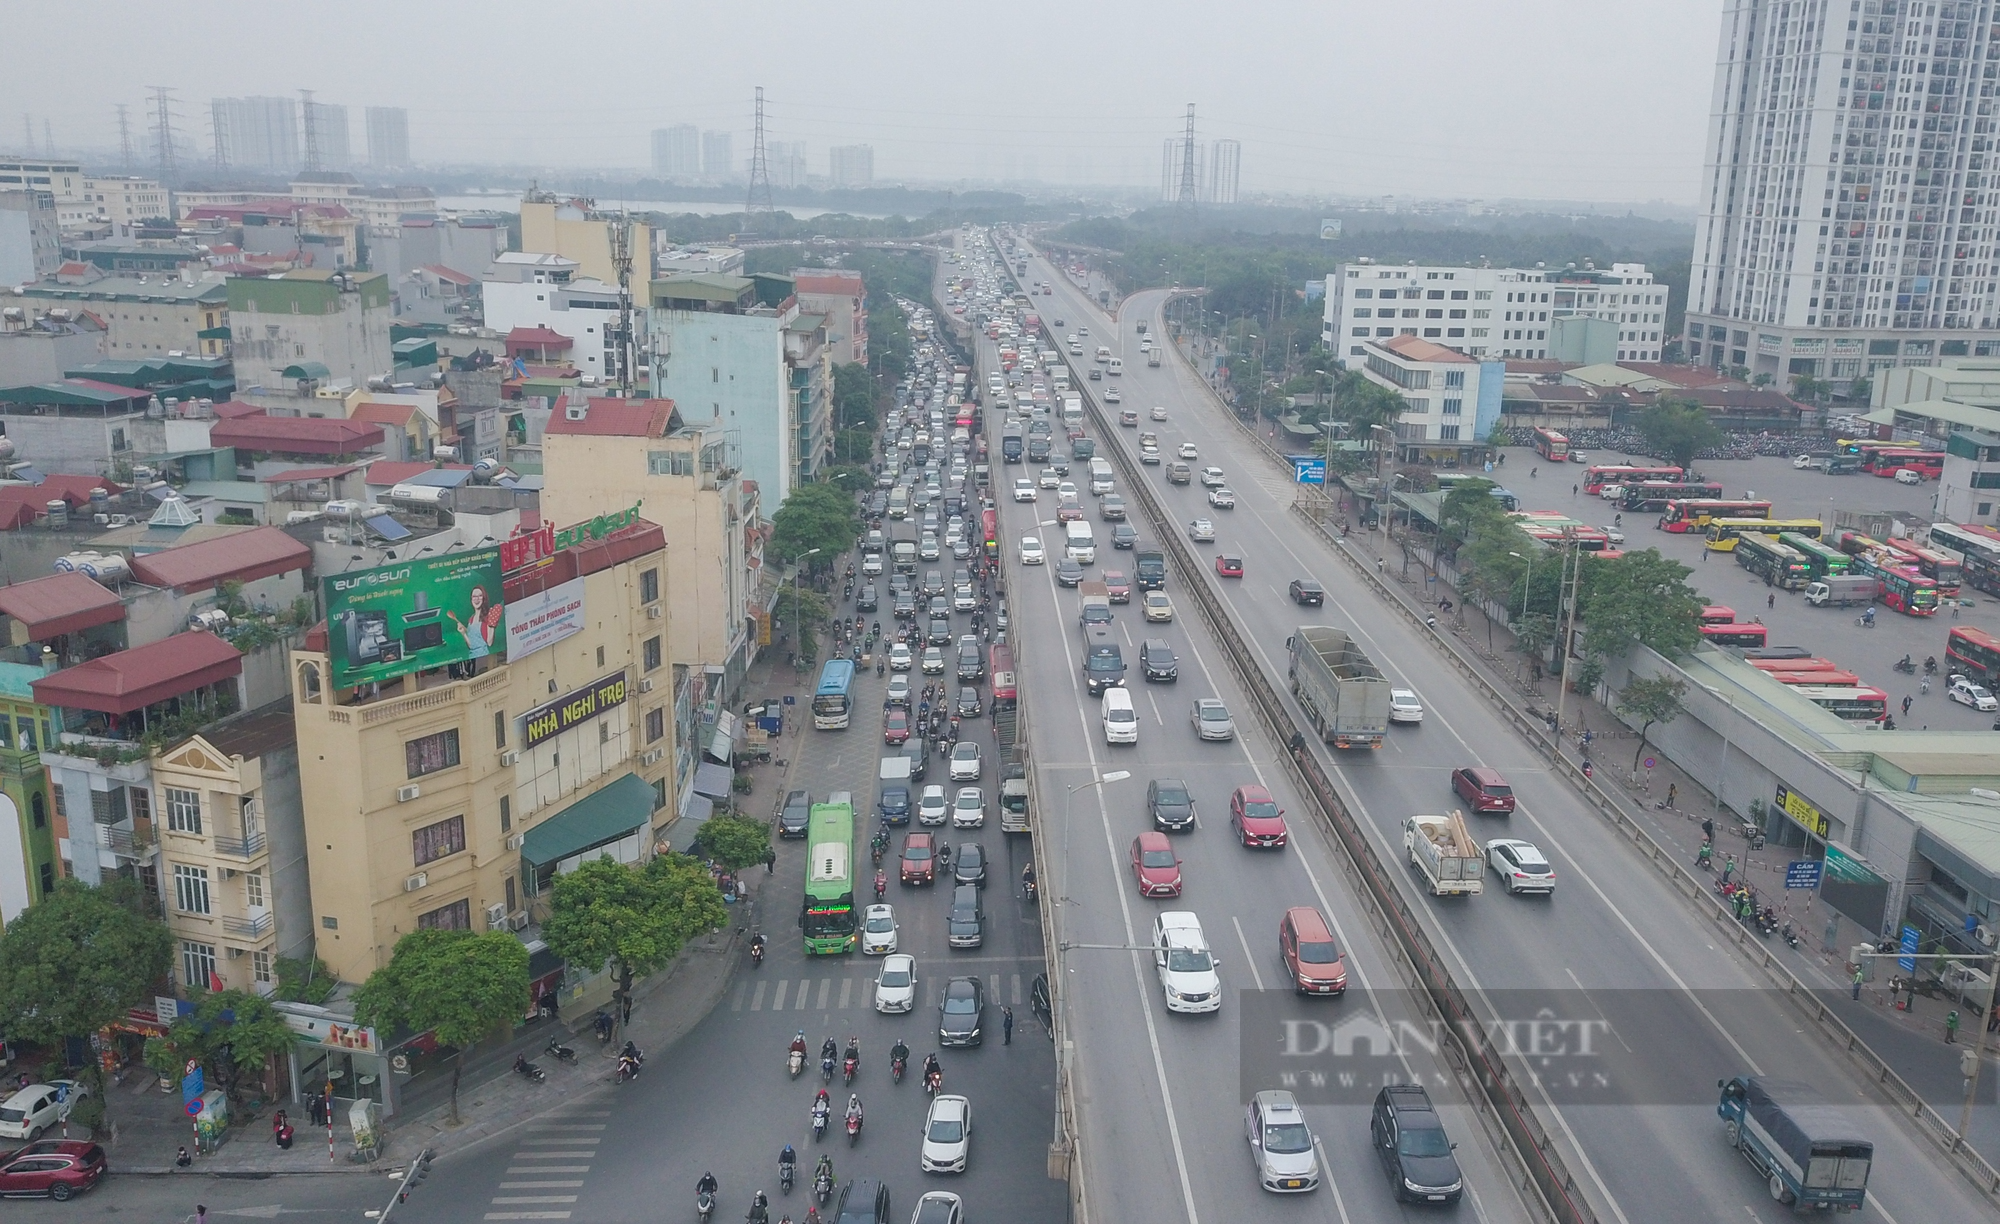 Người dân quay lại Hà Nội sau kỳ nghỉ lễ Tết dương, cửa ngõ Thủ đô ùn tắc kéo dài - Ảnh 9.